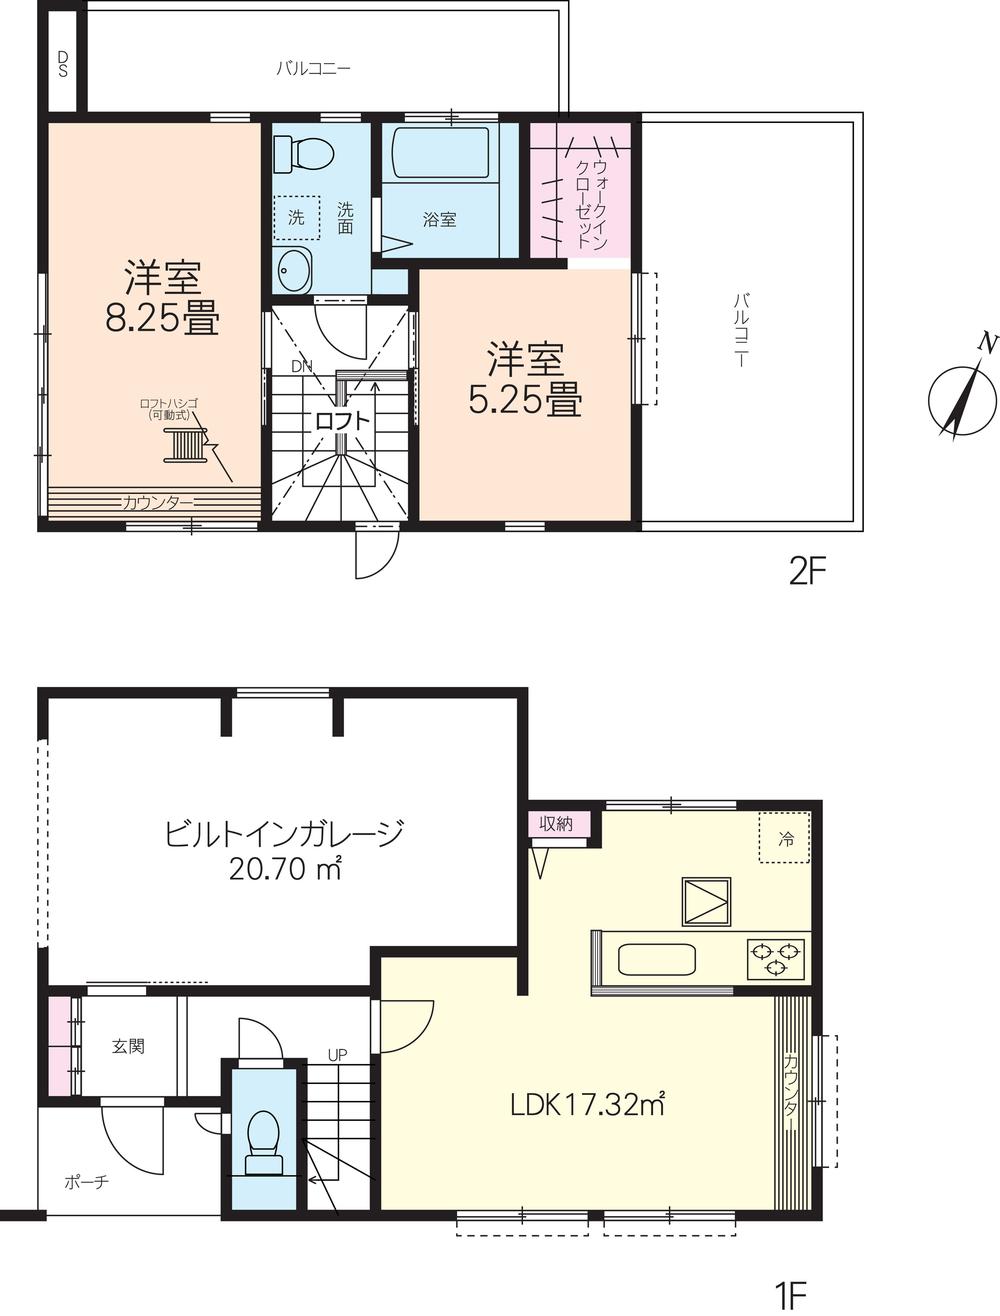 Floor plan. 28.8 million yen, 2LDK, Land area 162.42 sq m , Building area 89.22 sq m